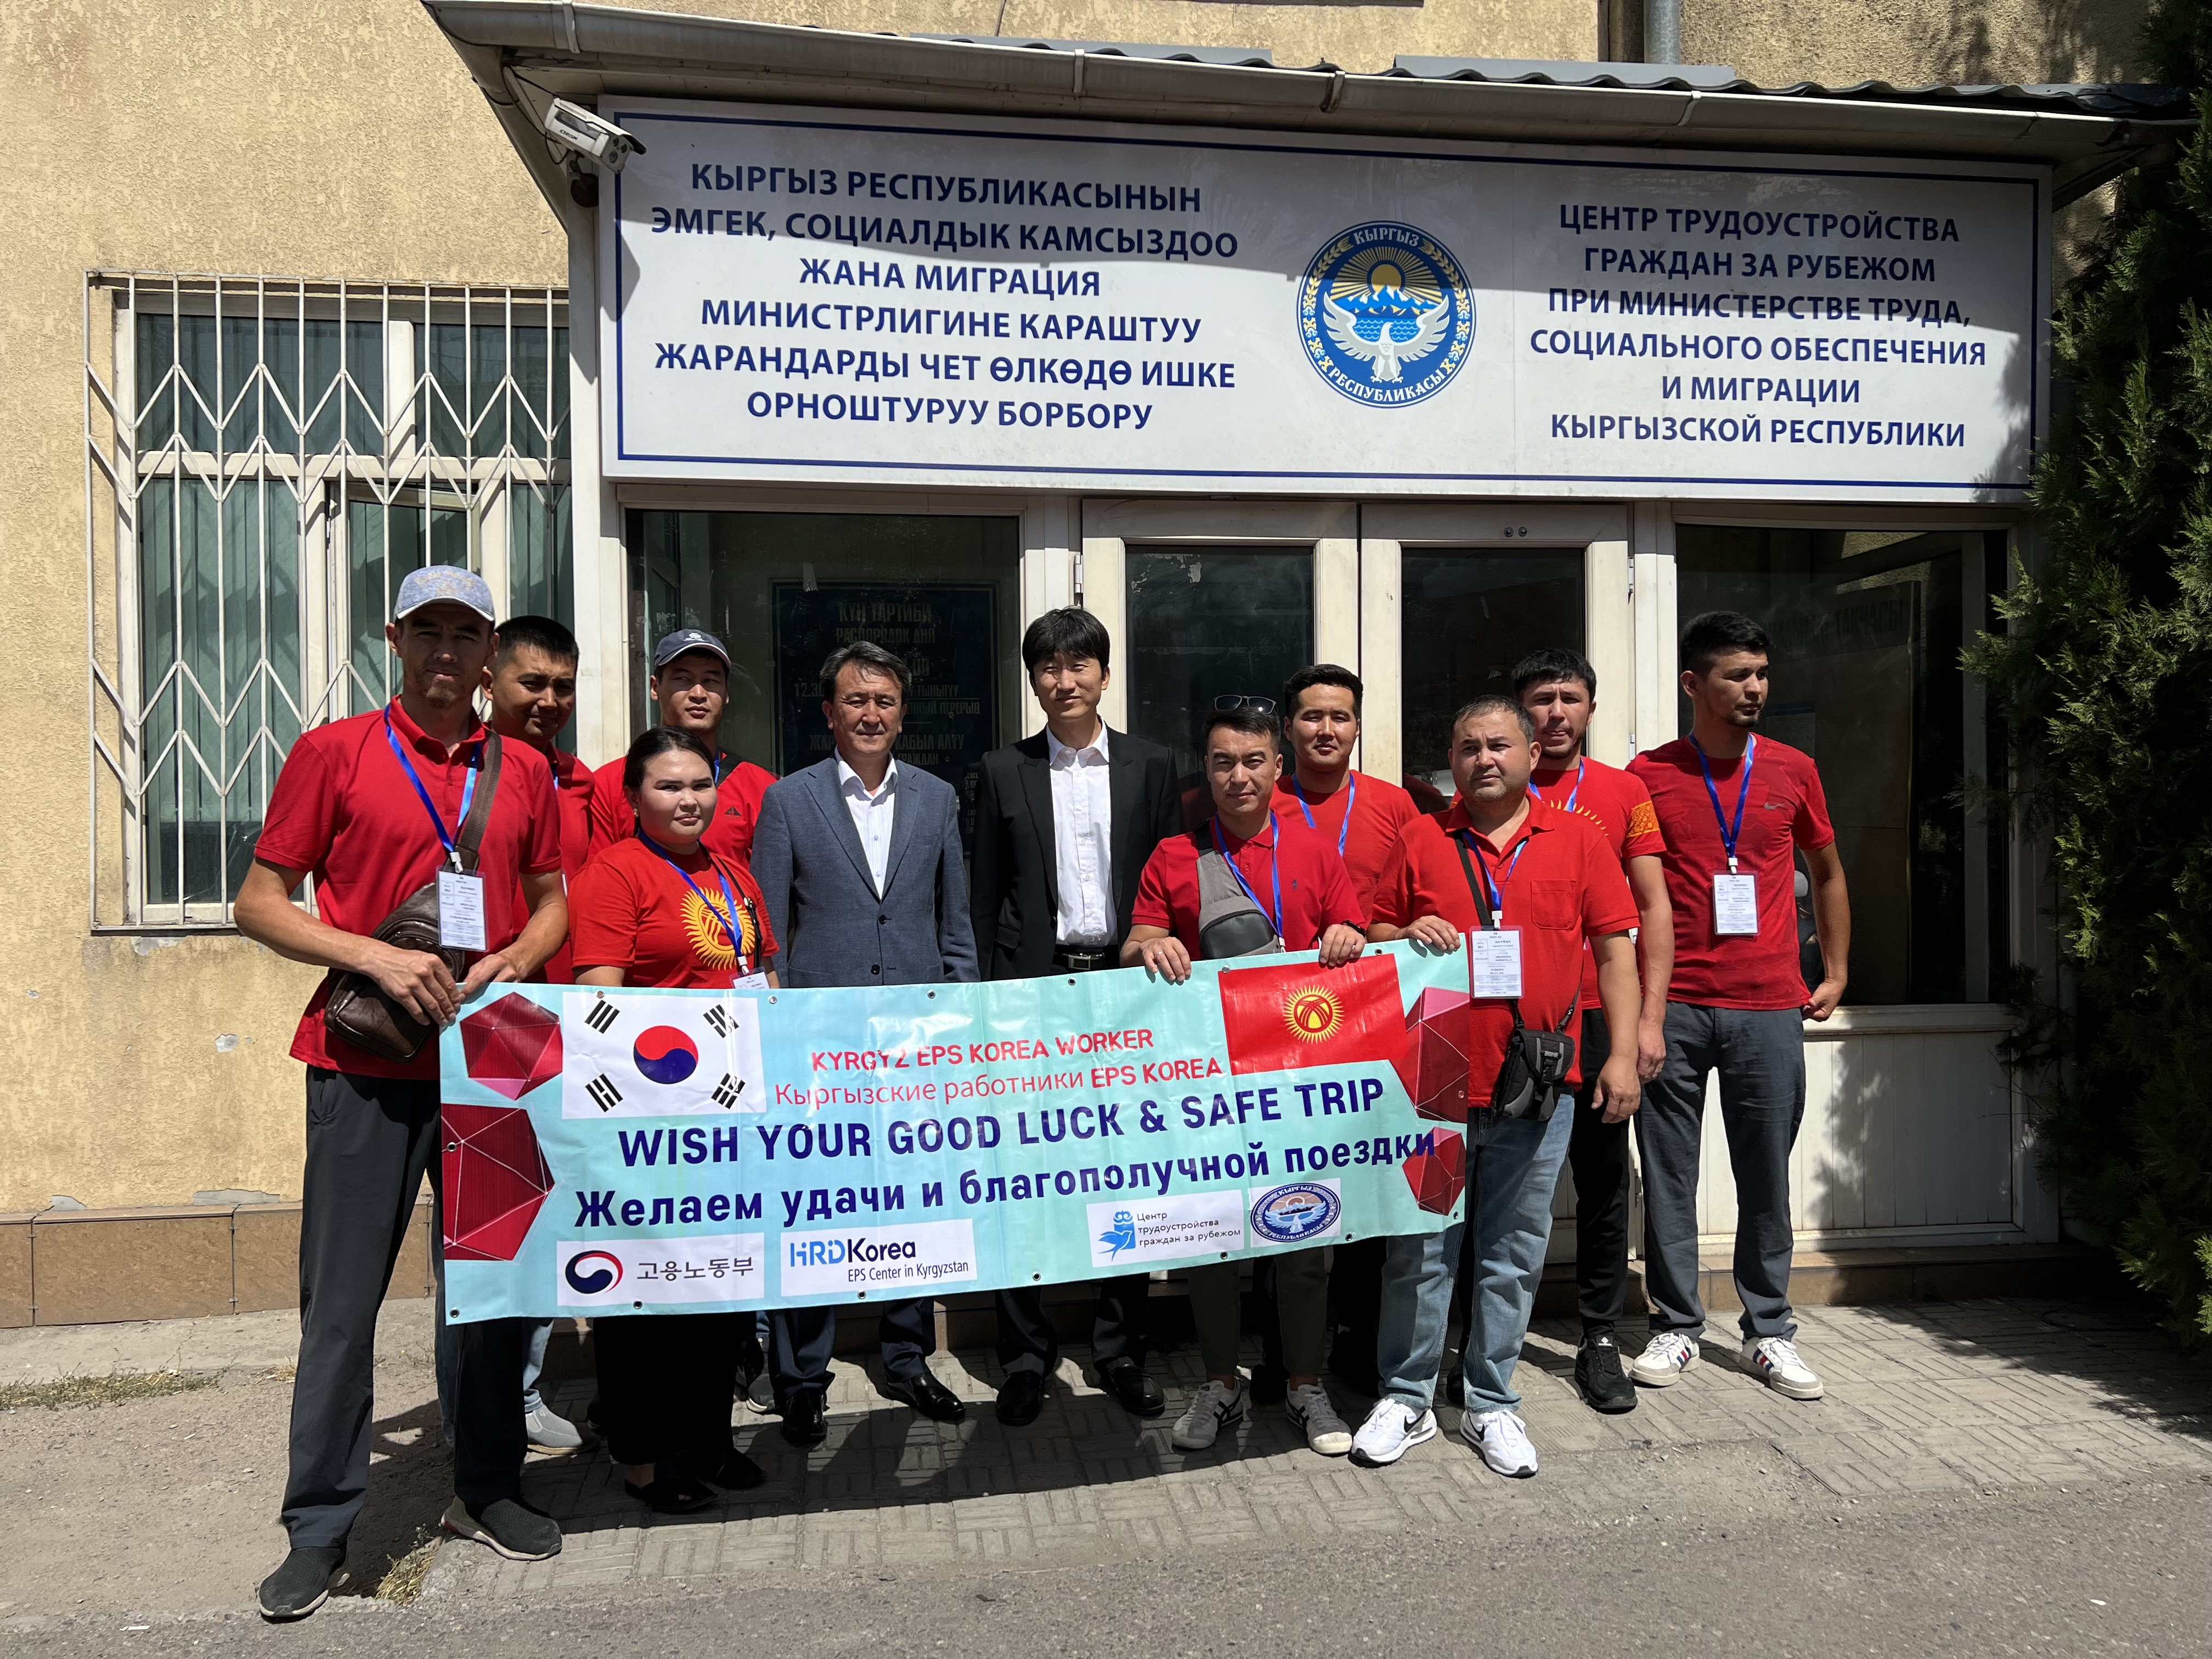 Сегодня мы отправили очередную группу из 11 наших граждан в Республику Корея по системе трудоустройства (EPS).